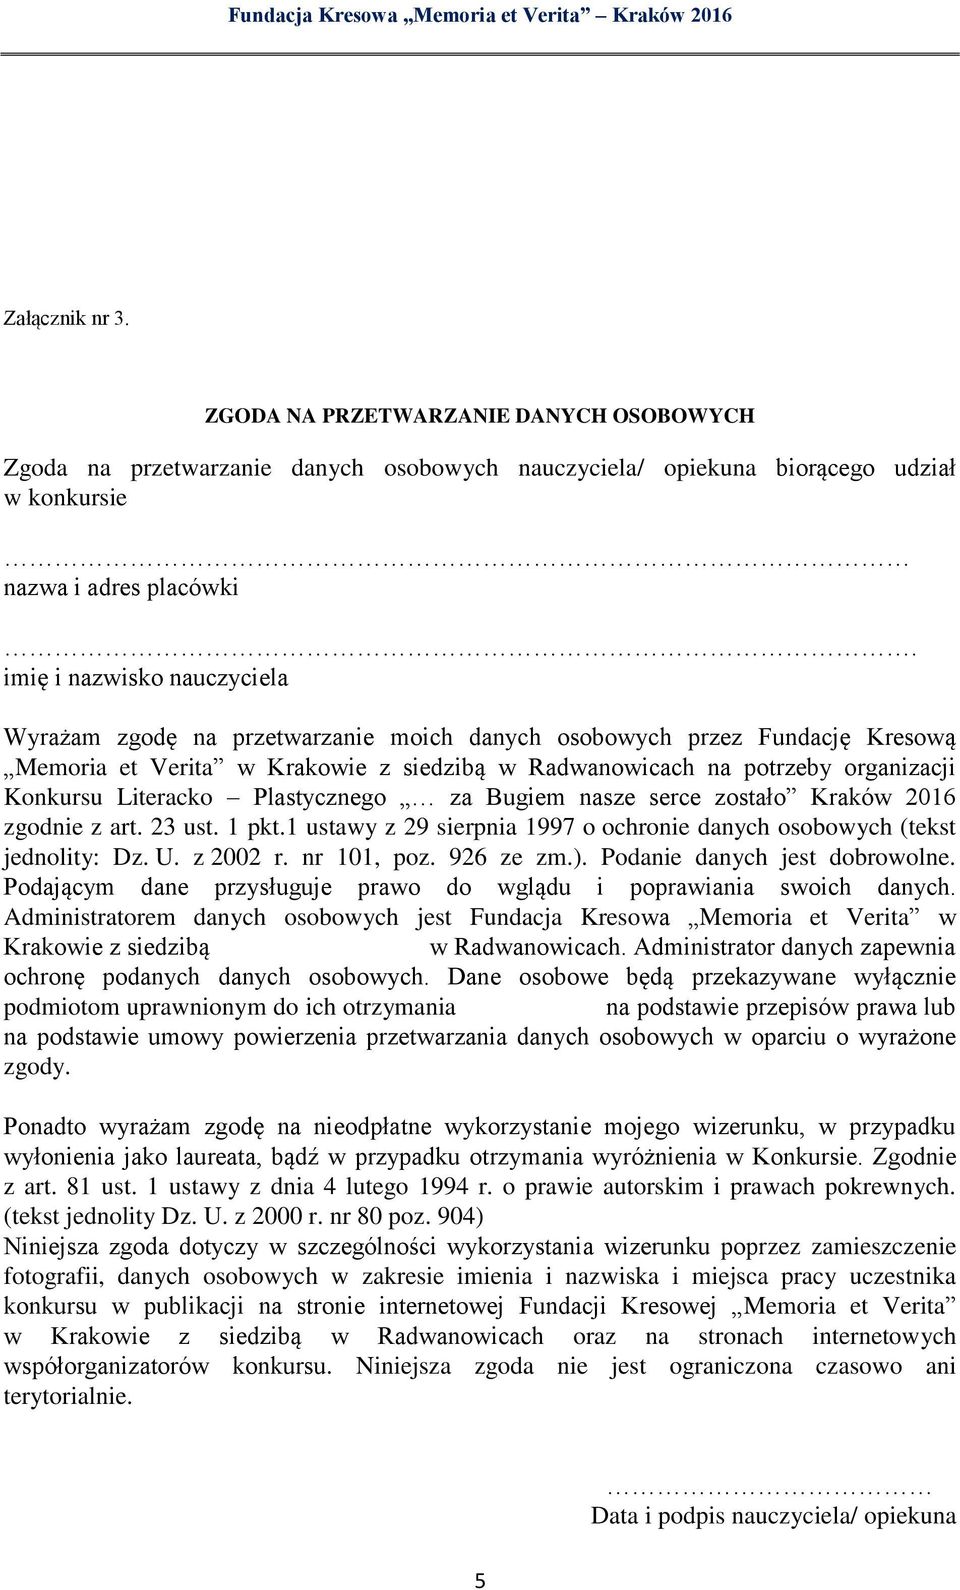 Literacko Plastycznego za Bugiem nasze serce zostało Kraków 2016 zgodnie z art. 23 ust. 1 pkt.1 ustawy z 29 sierpnia 1997 o ochronie danych osobowych (tekst jednolity: Dz. U. z 2002 r. nr 101, poz.